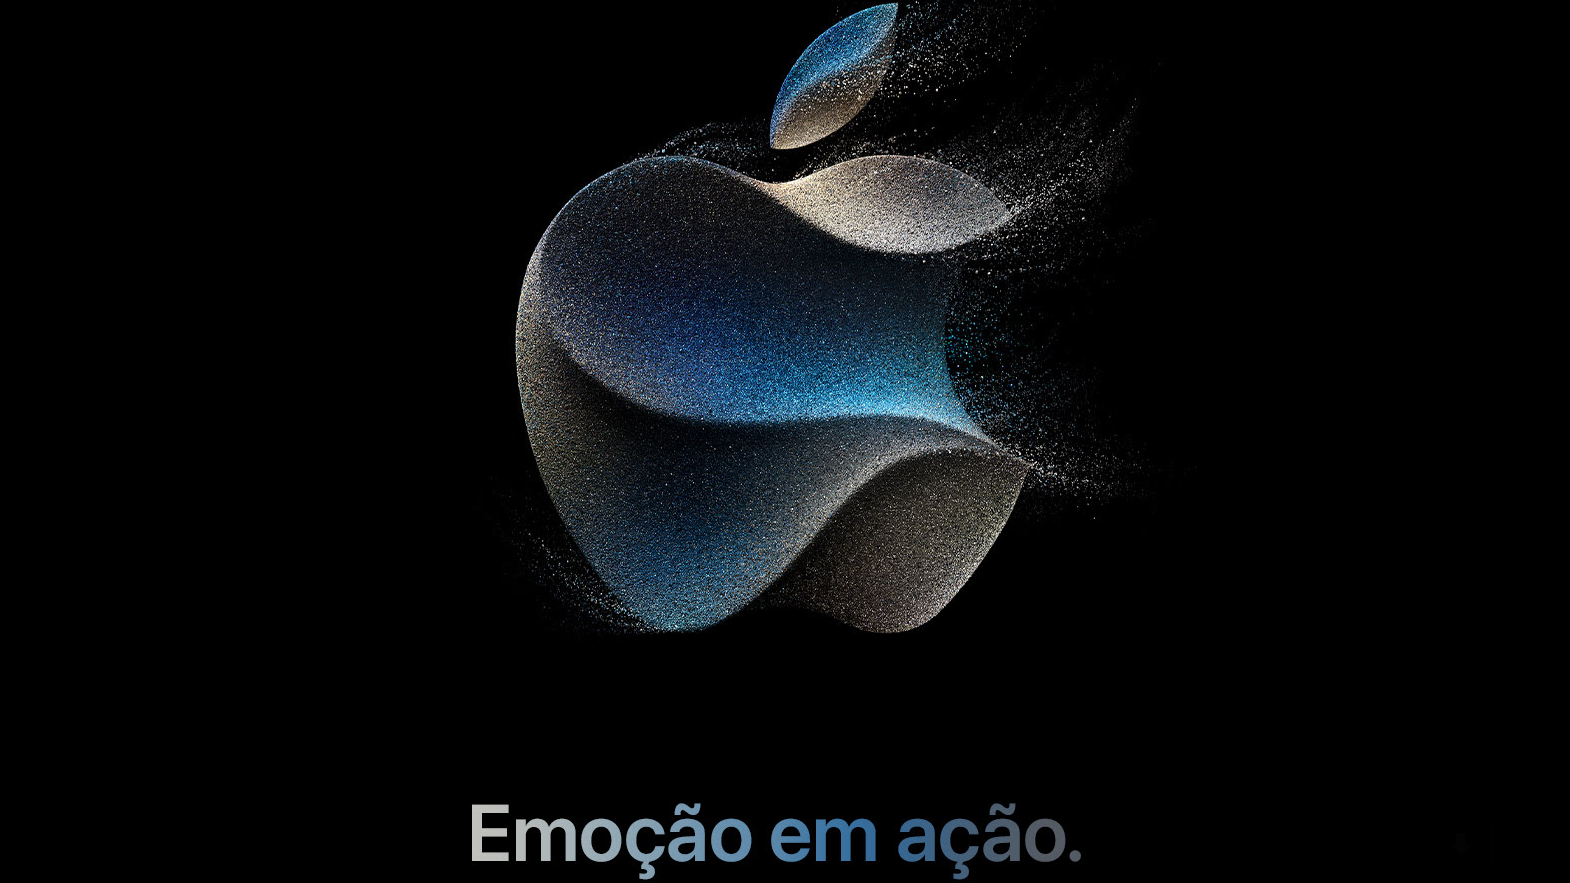 Print de convite com a marca estilizada da Apple e os textos "Emoção em ação", "12 de setembro de 2023" e "14h (BRT)" logo abaixo.